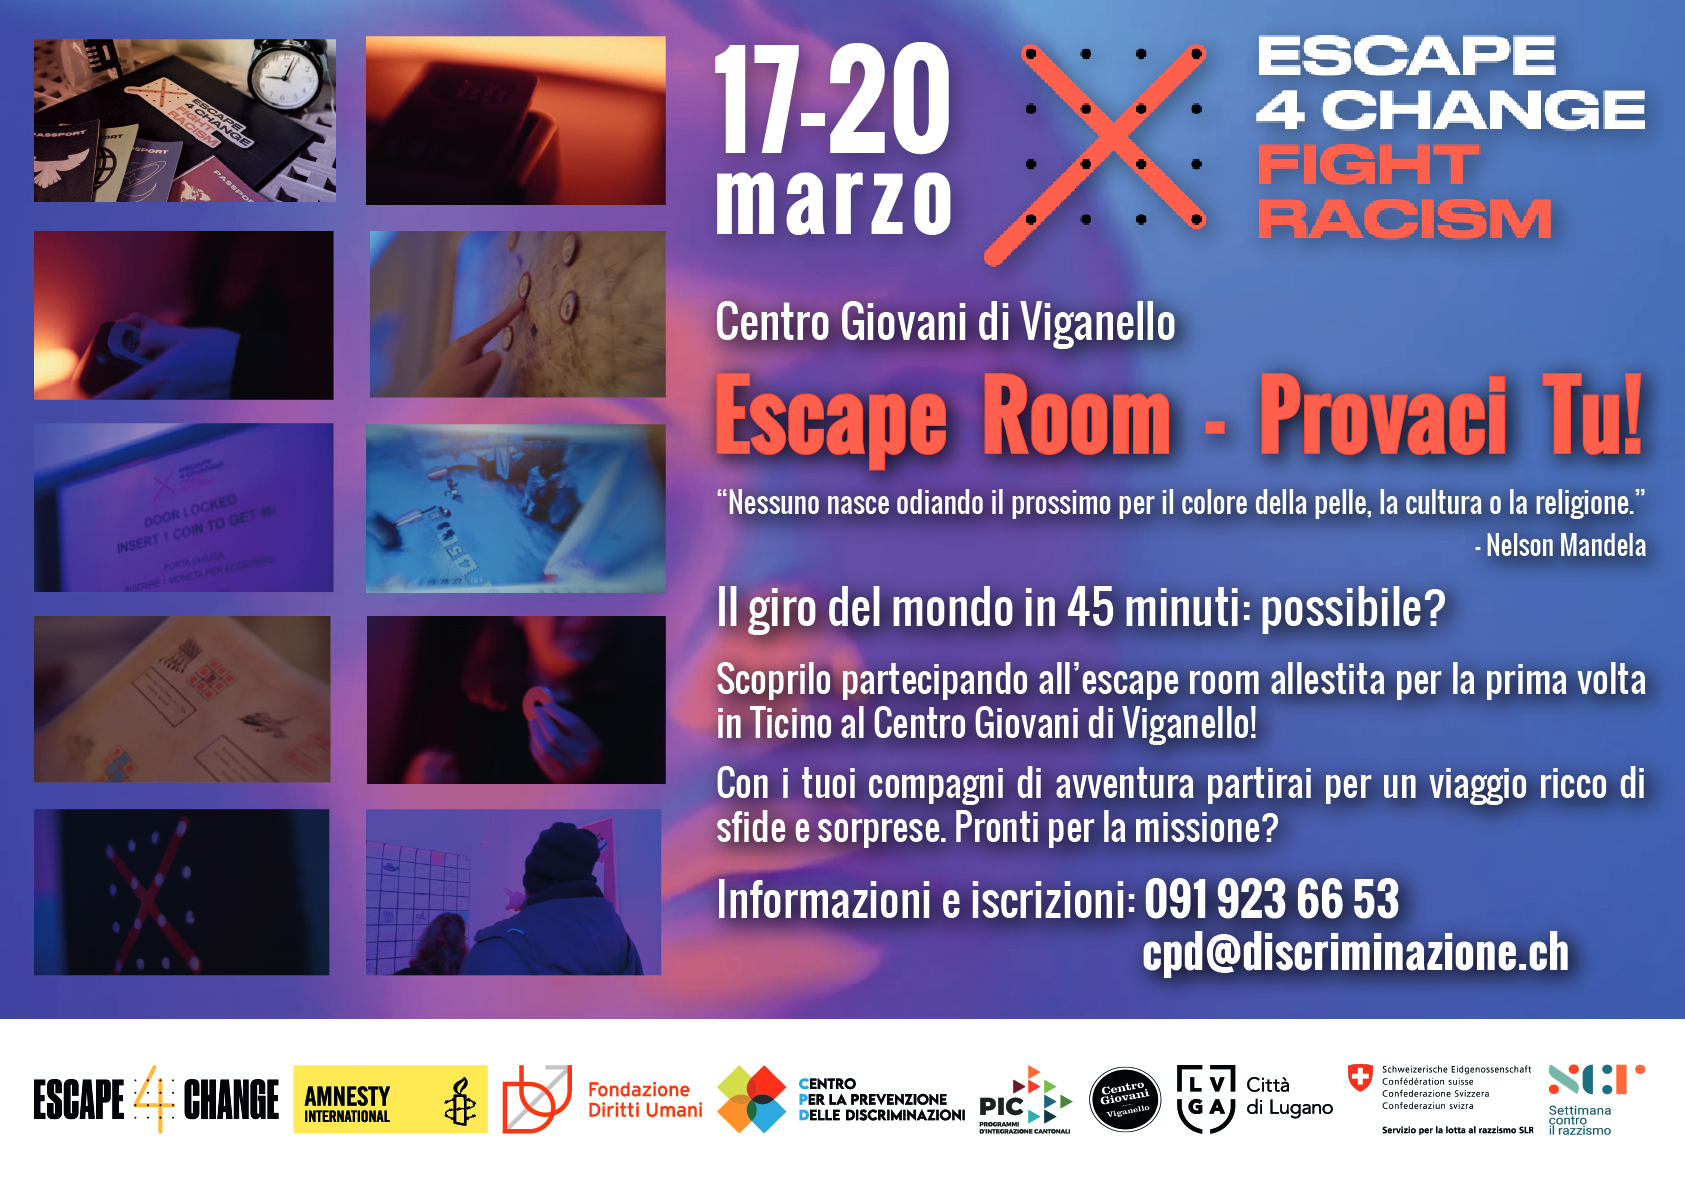 Escape Room: Provaci tu!